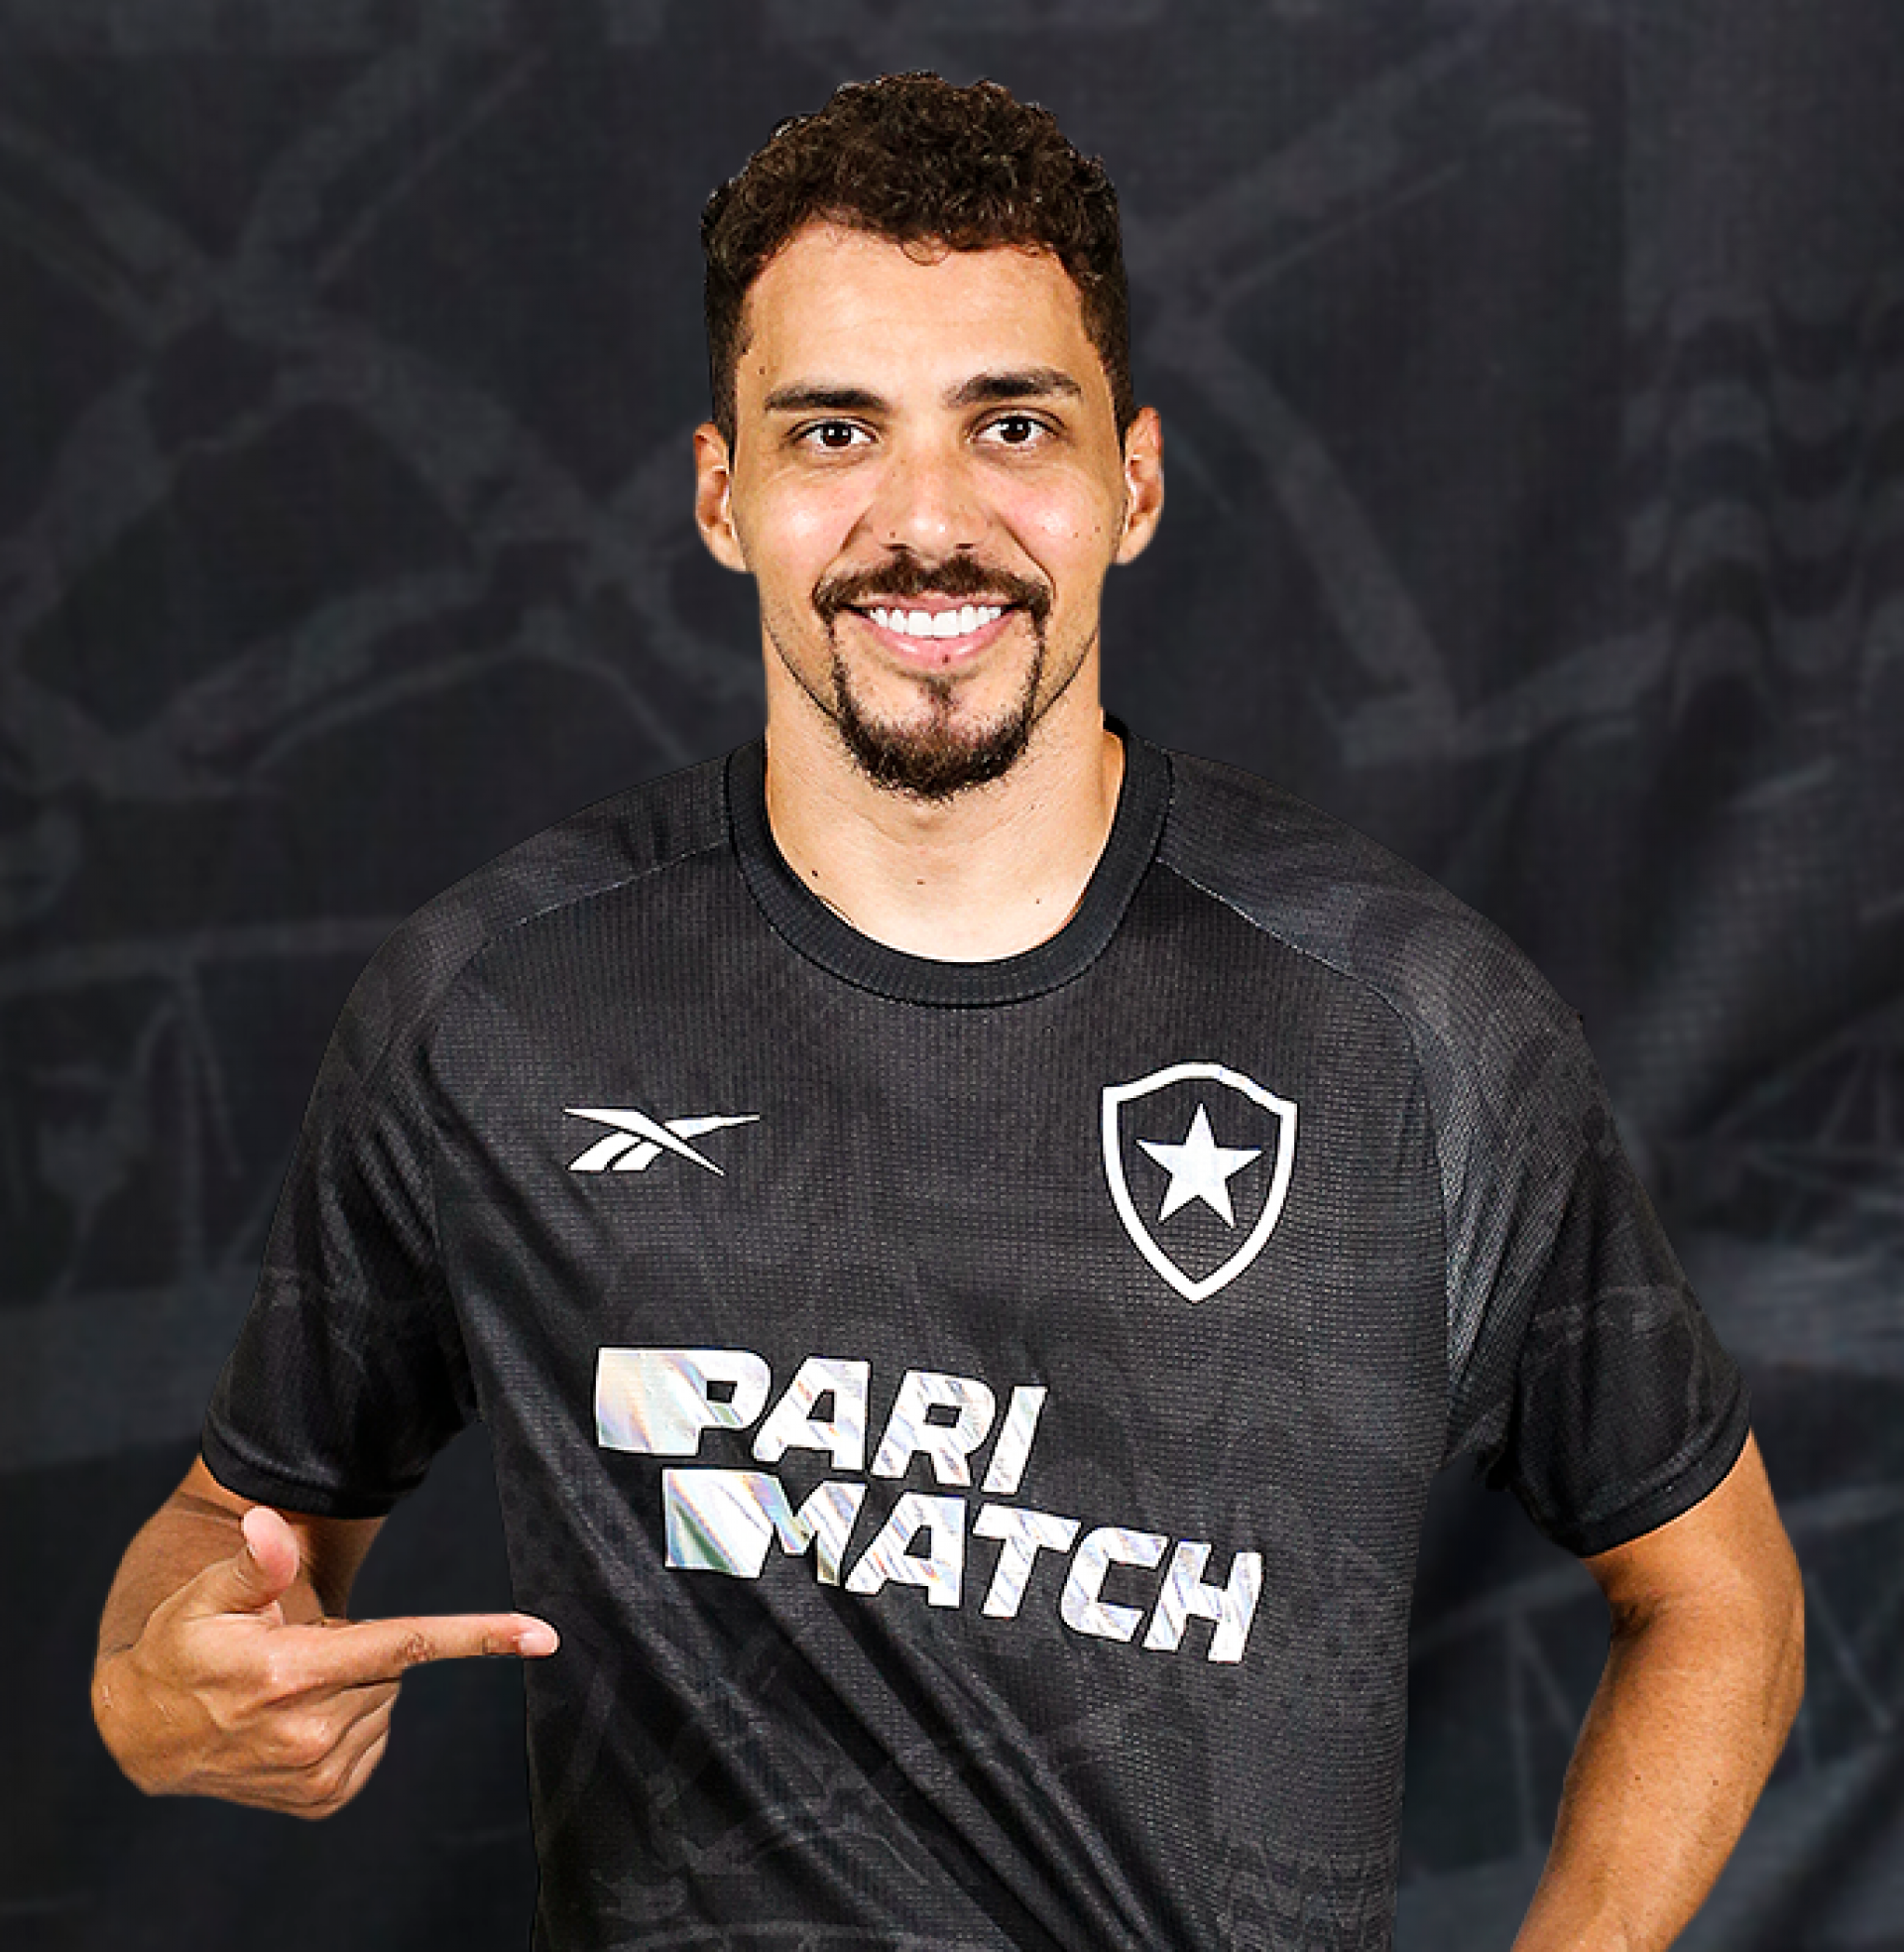 Nova camisa de aquecimento do Botafogo - Foto: Divulgação/Botafogo